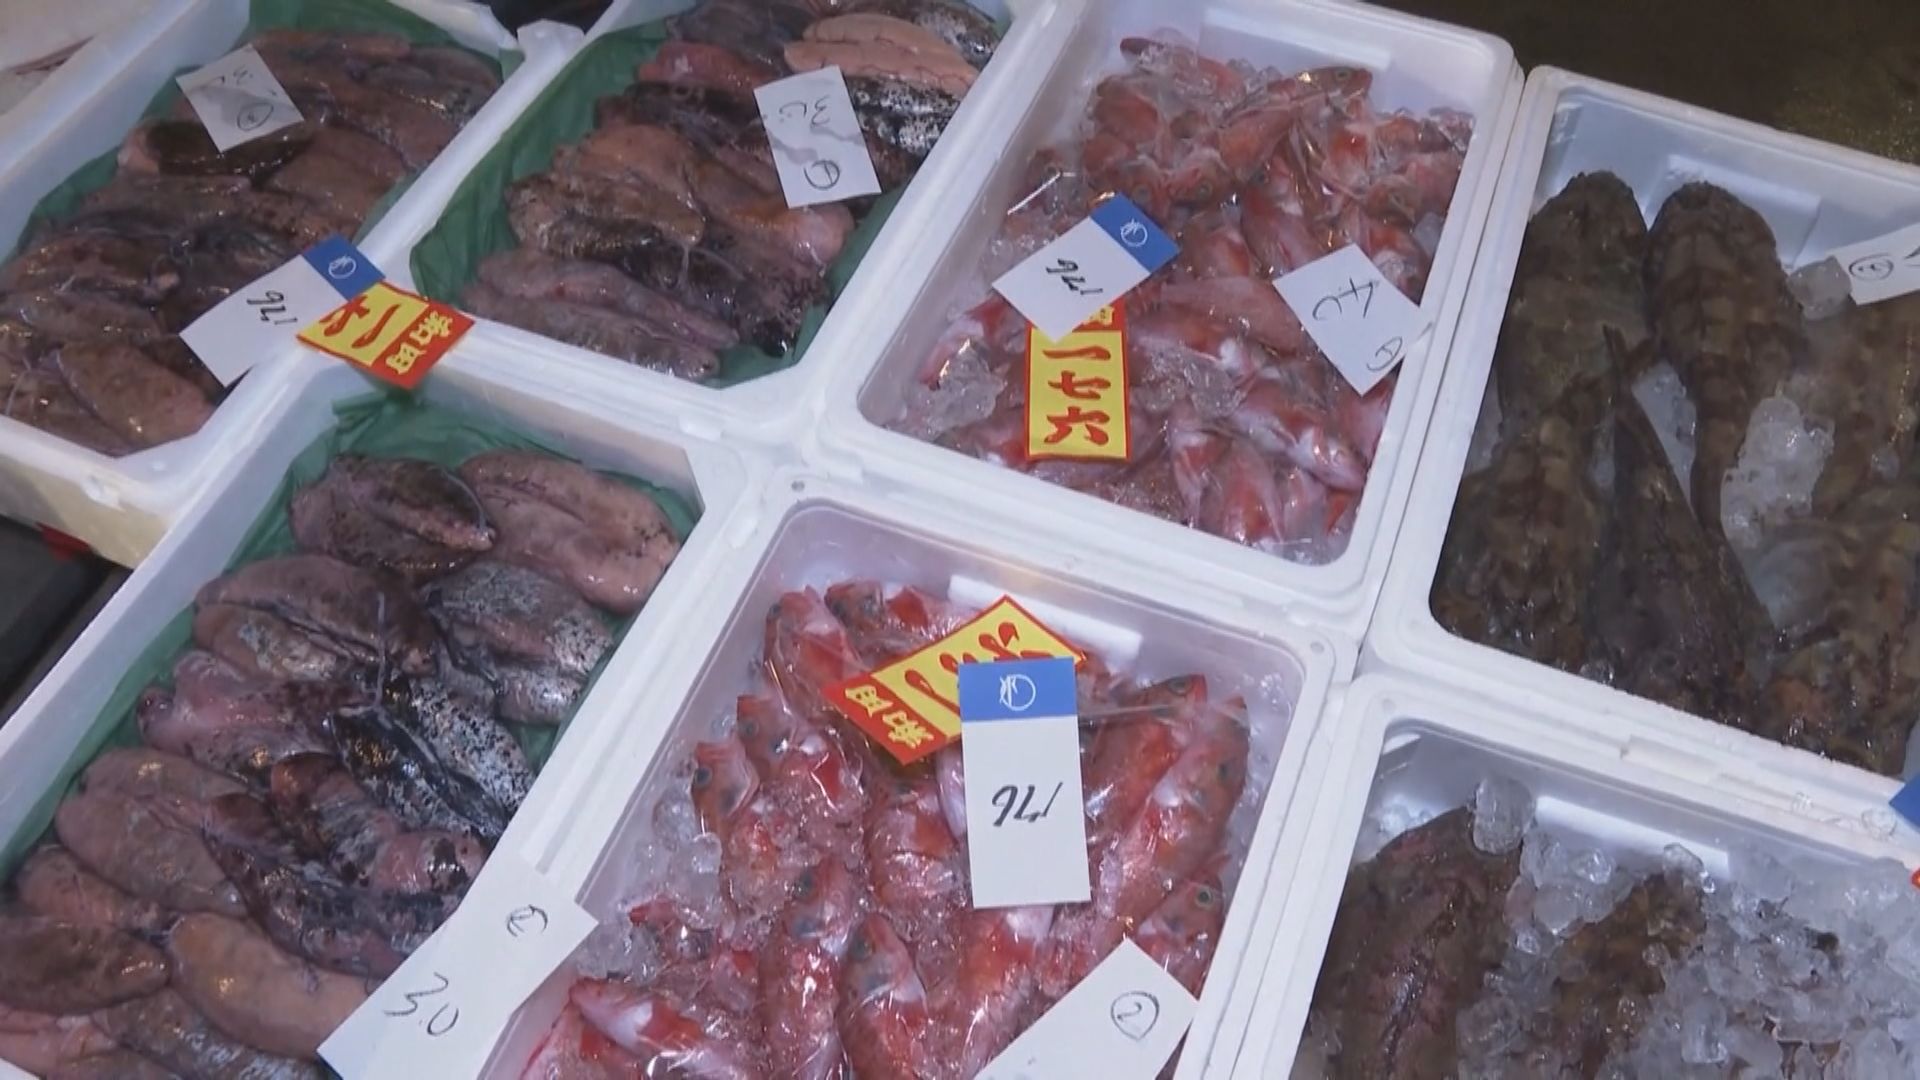 港府或禁部分日本食品進口 食品業界料生意影響微